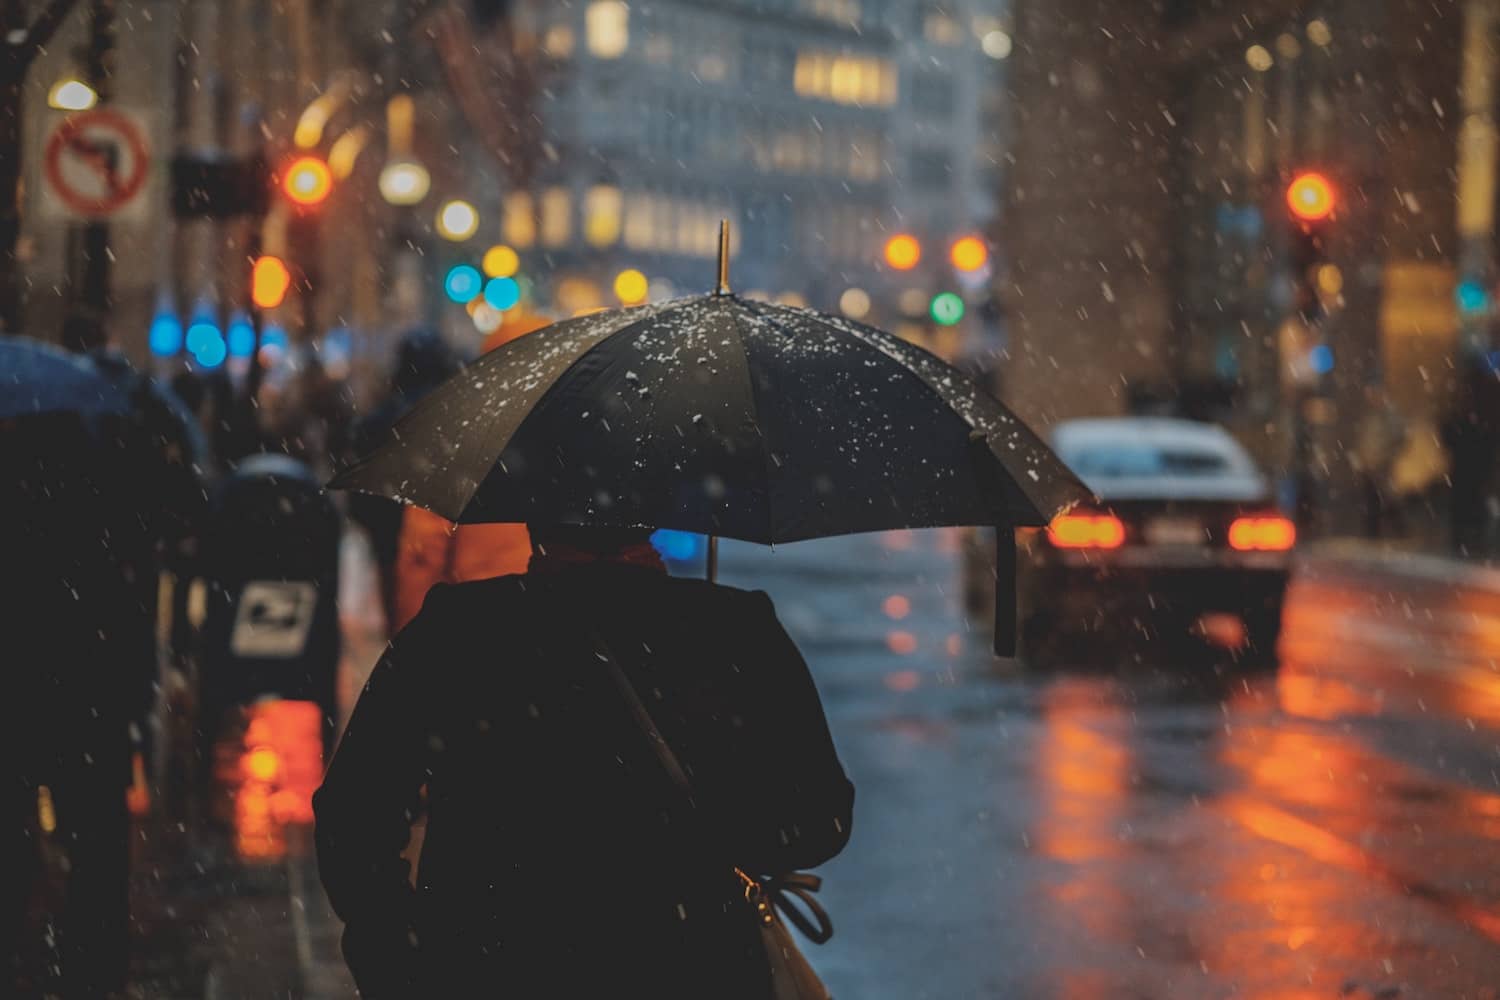 personne sous parapluie debout sous la pluie 